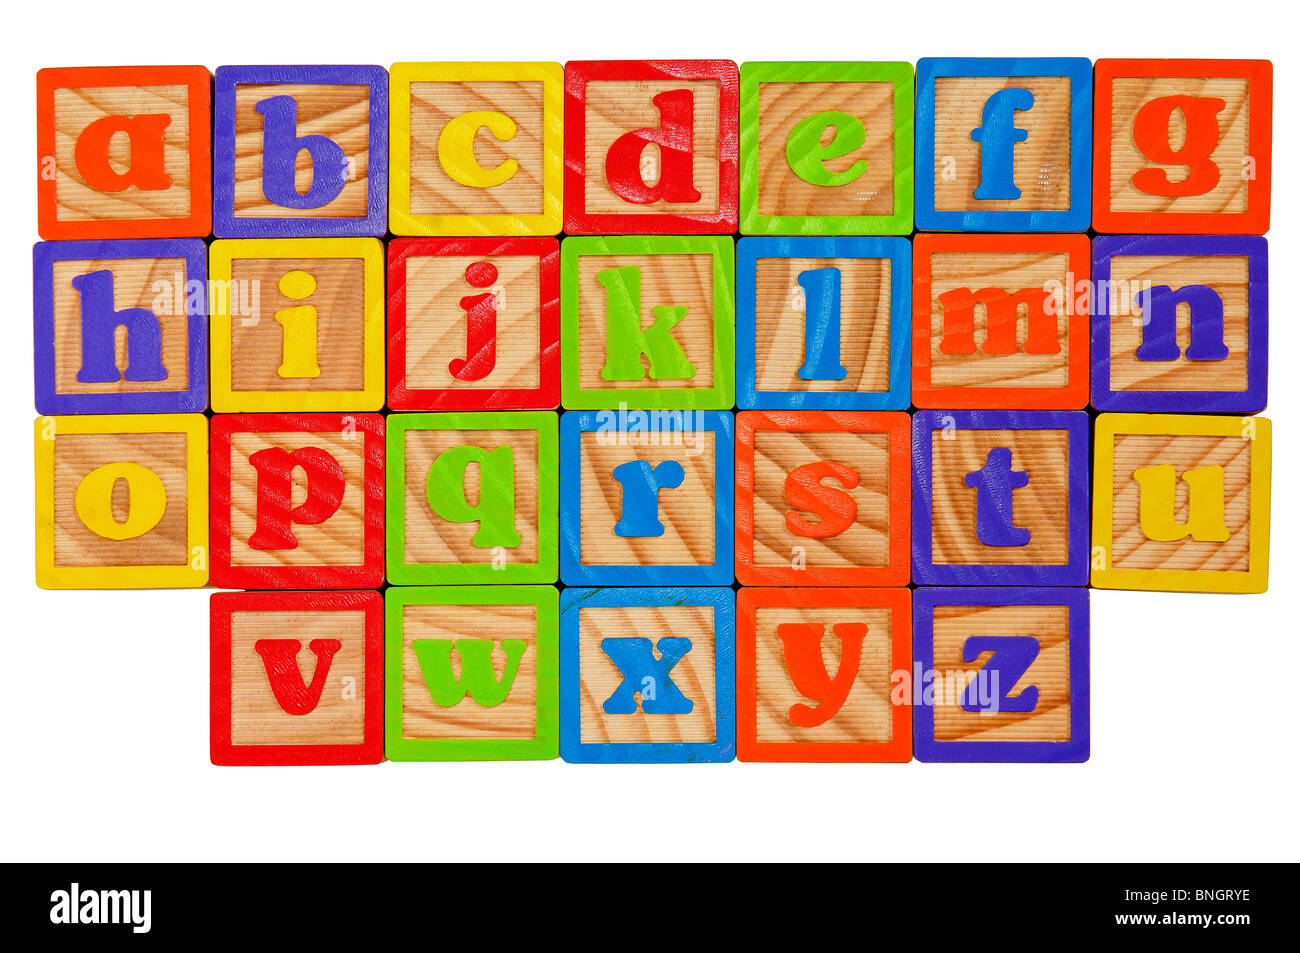 Kinder-Alphabet-Blöcke von das ganze Alphabet in Kleinbuchstaben  Stockfotografie - Alamy